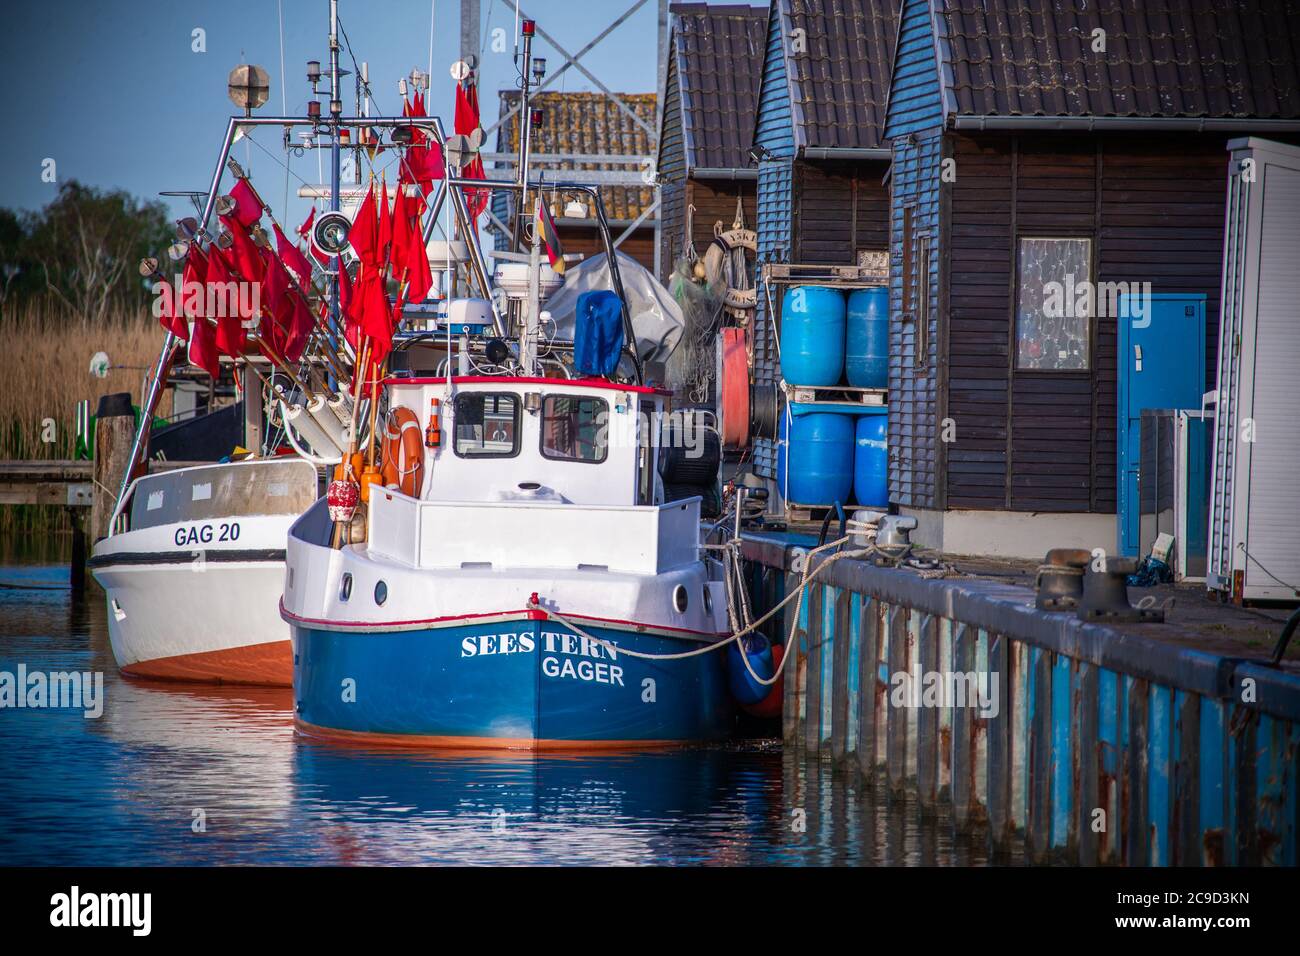 Gager, Deutschland. Mai 2020. Im kleinen Hafen von Gager befinden sich Fischkutter mit Fahnenmasten zur Markierung der Kiefernnetze. Quelle: Jens Büttner/dpa-Zentralbild/ZB/dpa/Alamy Live News Stockfoto